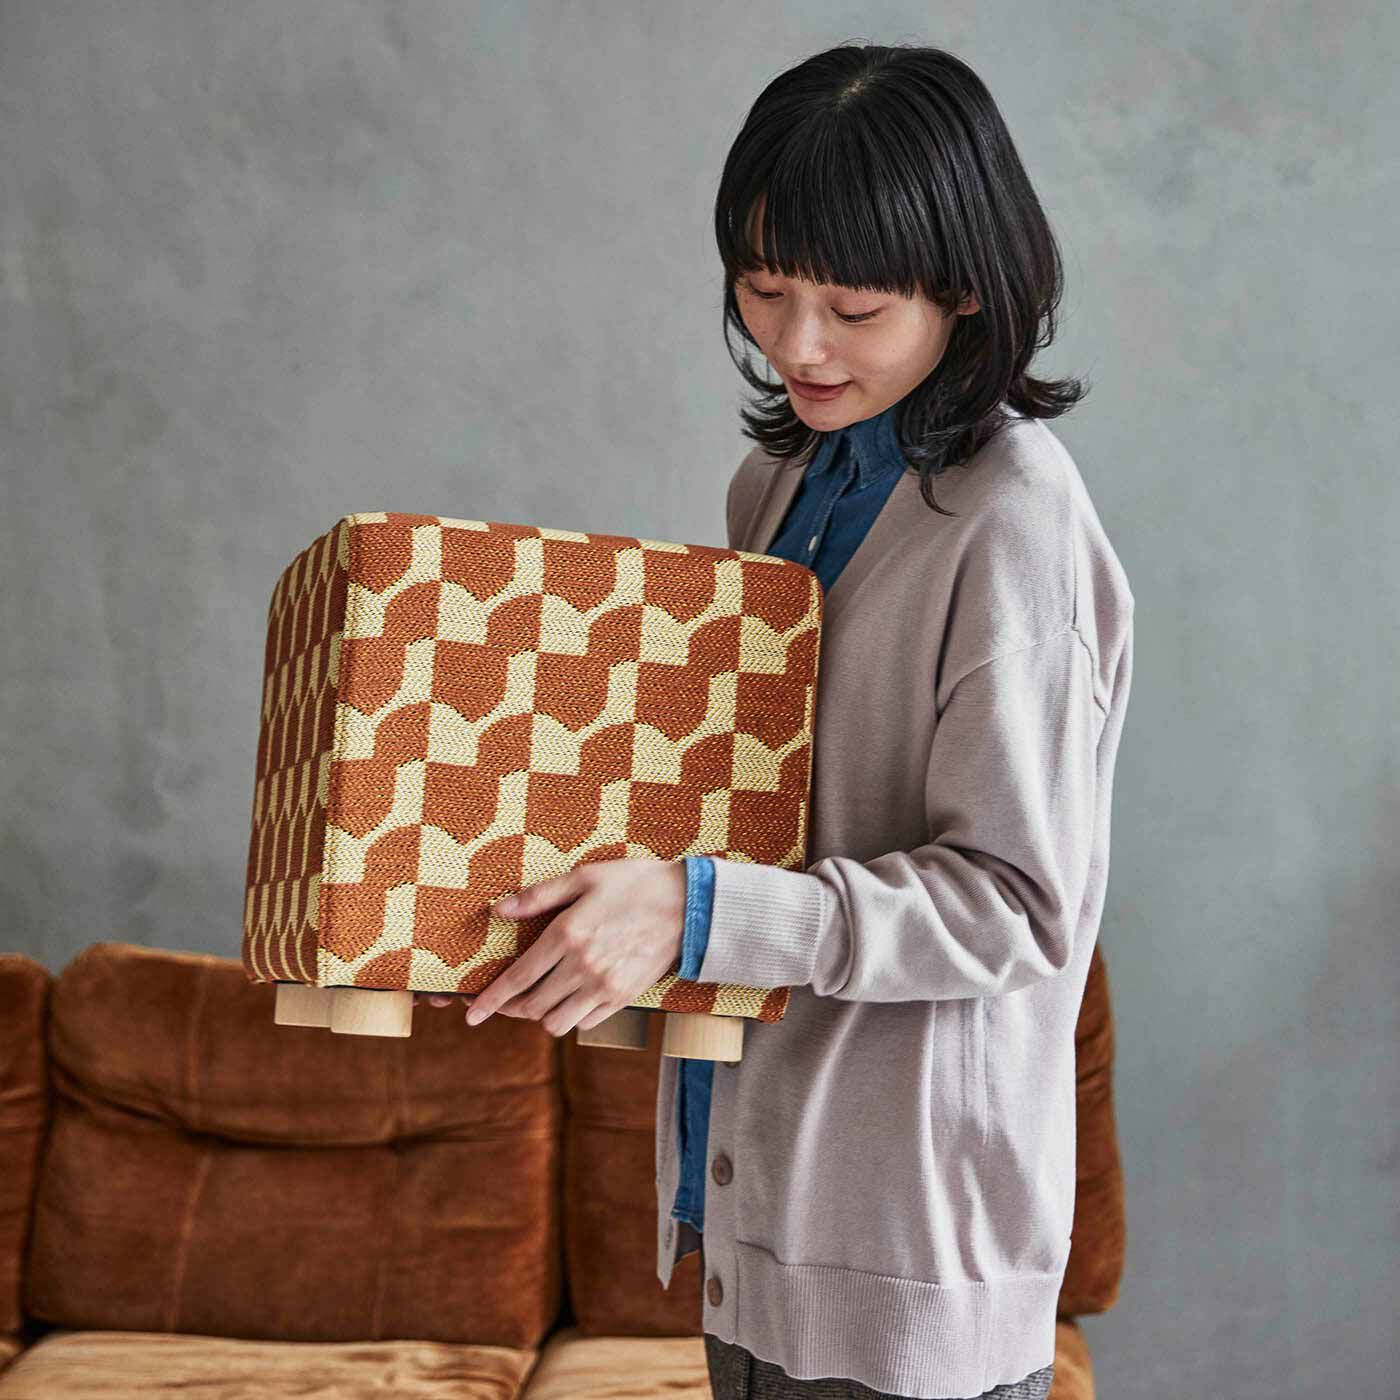 ＆Stories|テキスタイルデザイナーと家具職人が作った 播州ジャカード織のスツール〈レモンティー色〉|女性でも楽に移動できる約3kgの重さ。